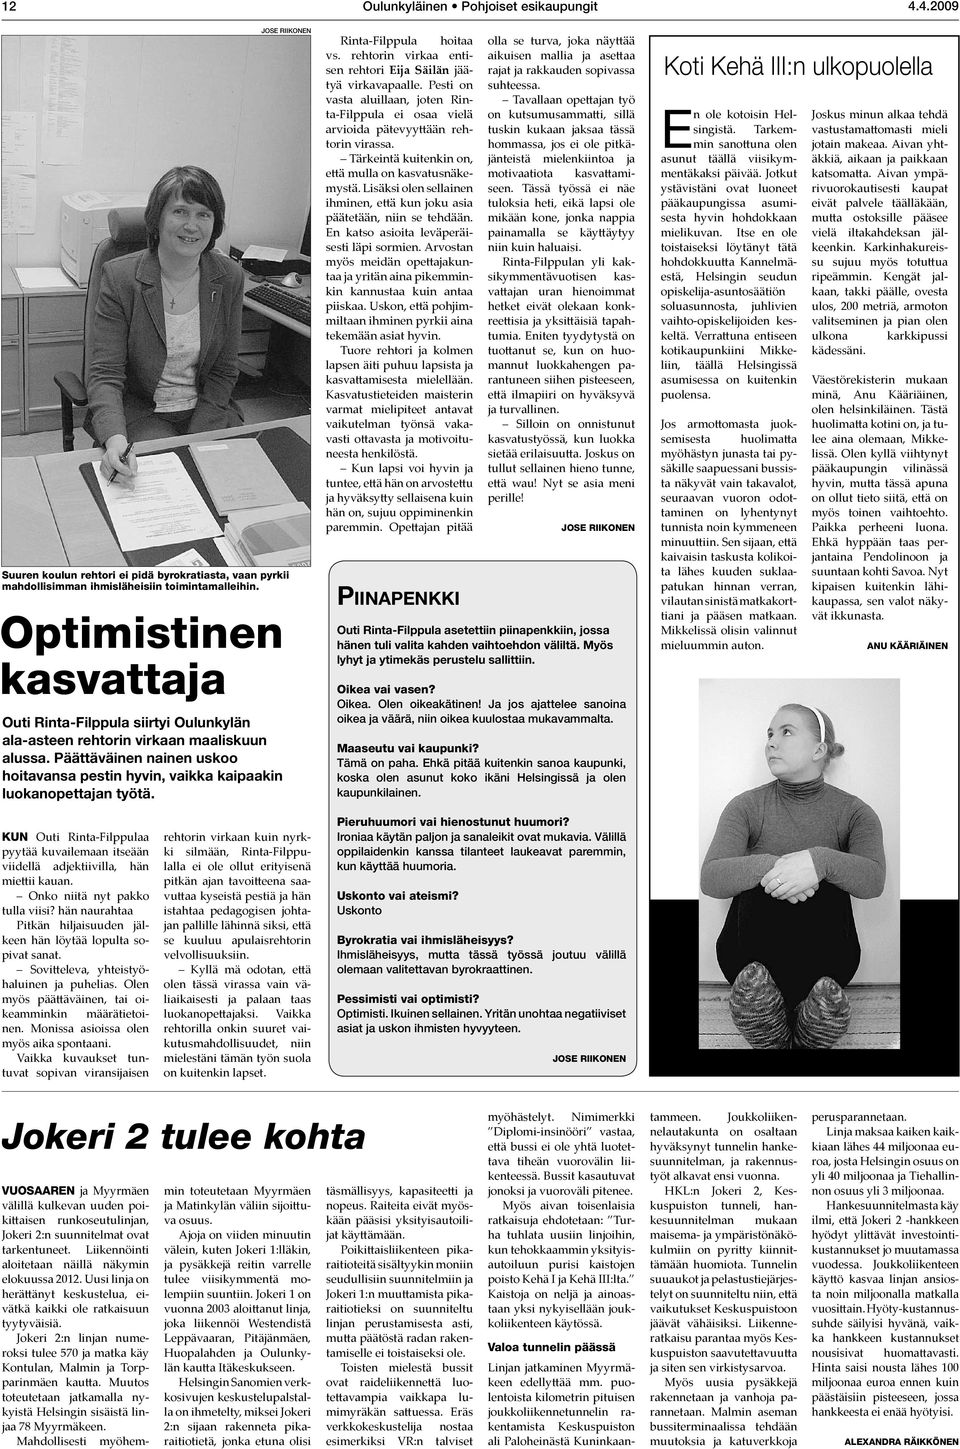 Jose Riikonen Rinta-Filppula hoitaa vs. rehtorin virkaa entisen rehtori Eija Säilän jäätyä virkavapaalle.